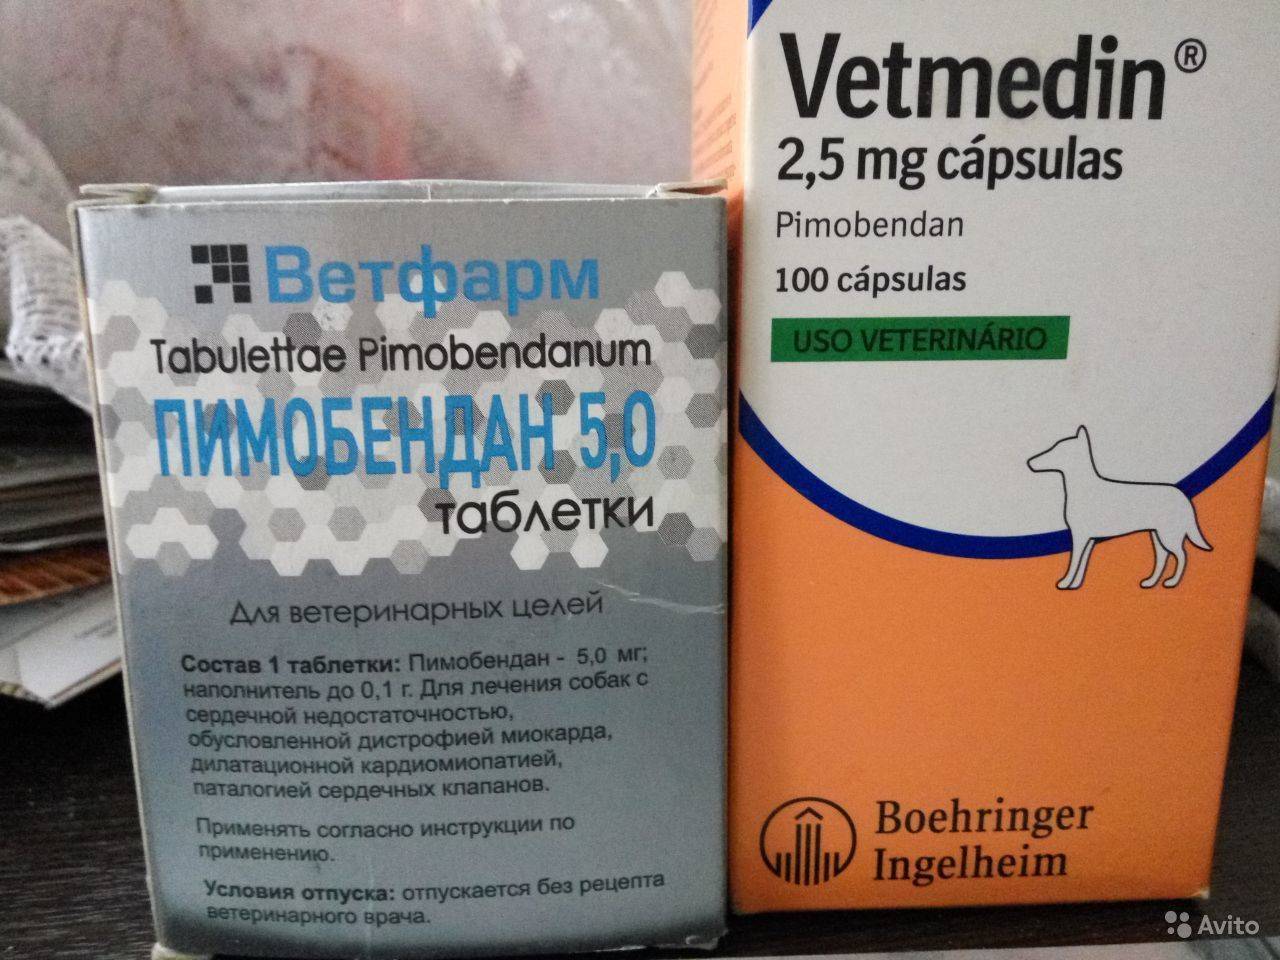 Ветмедин – препарат для лечения сердечной недостаточности у собак